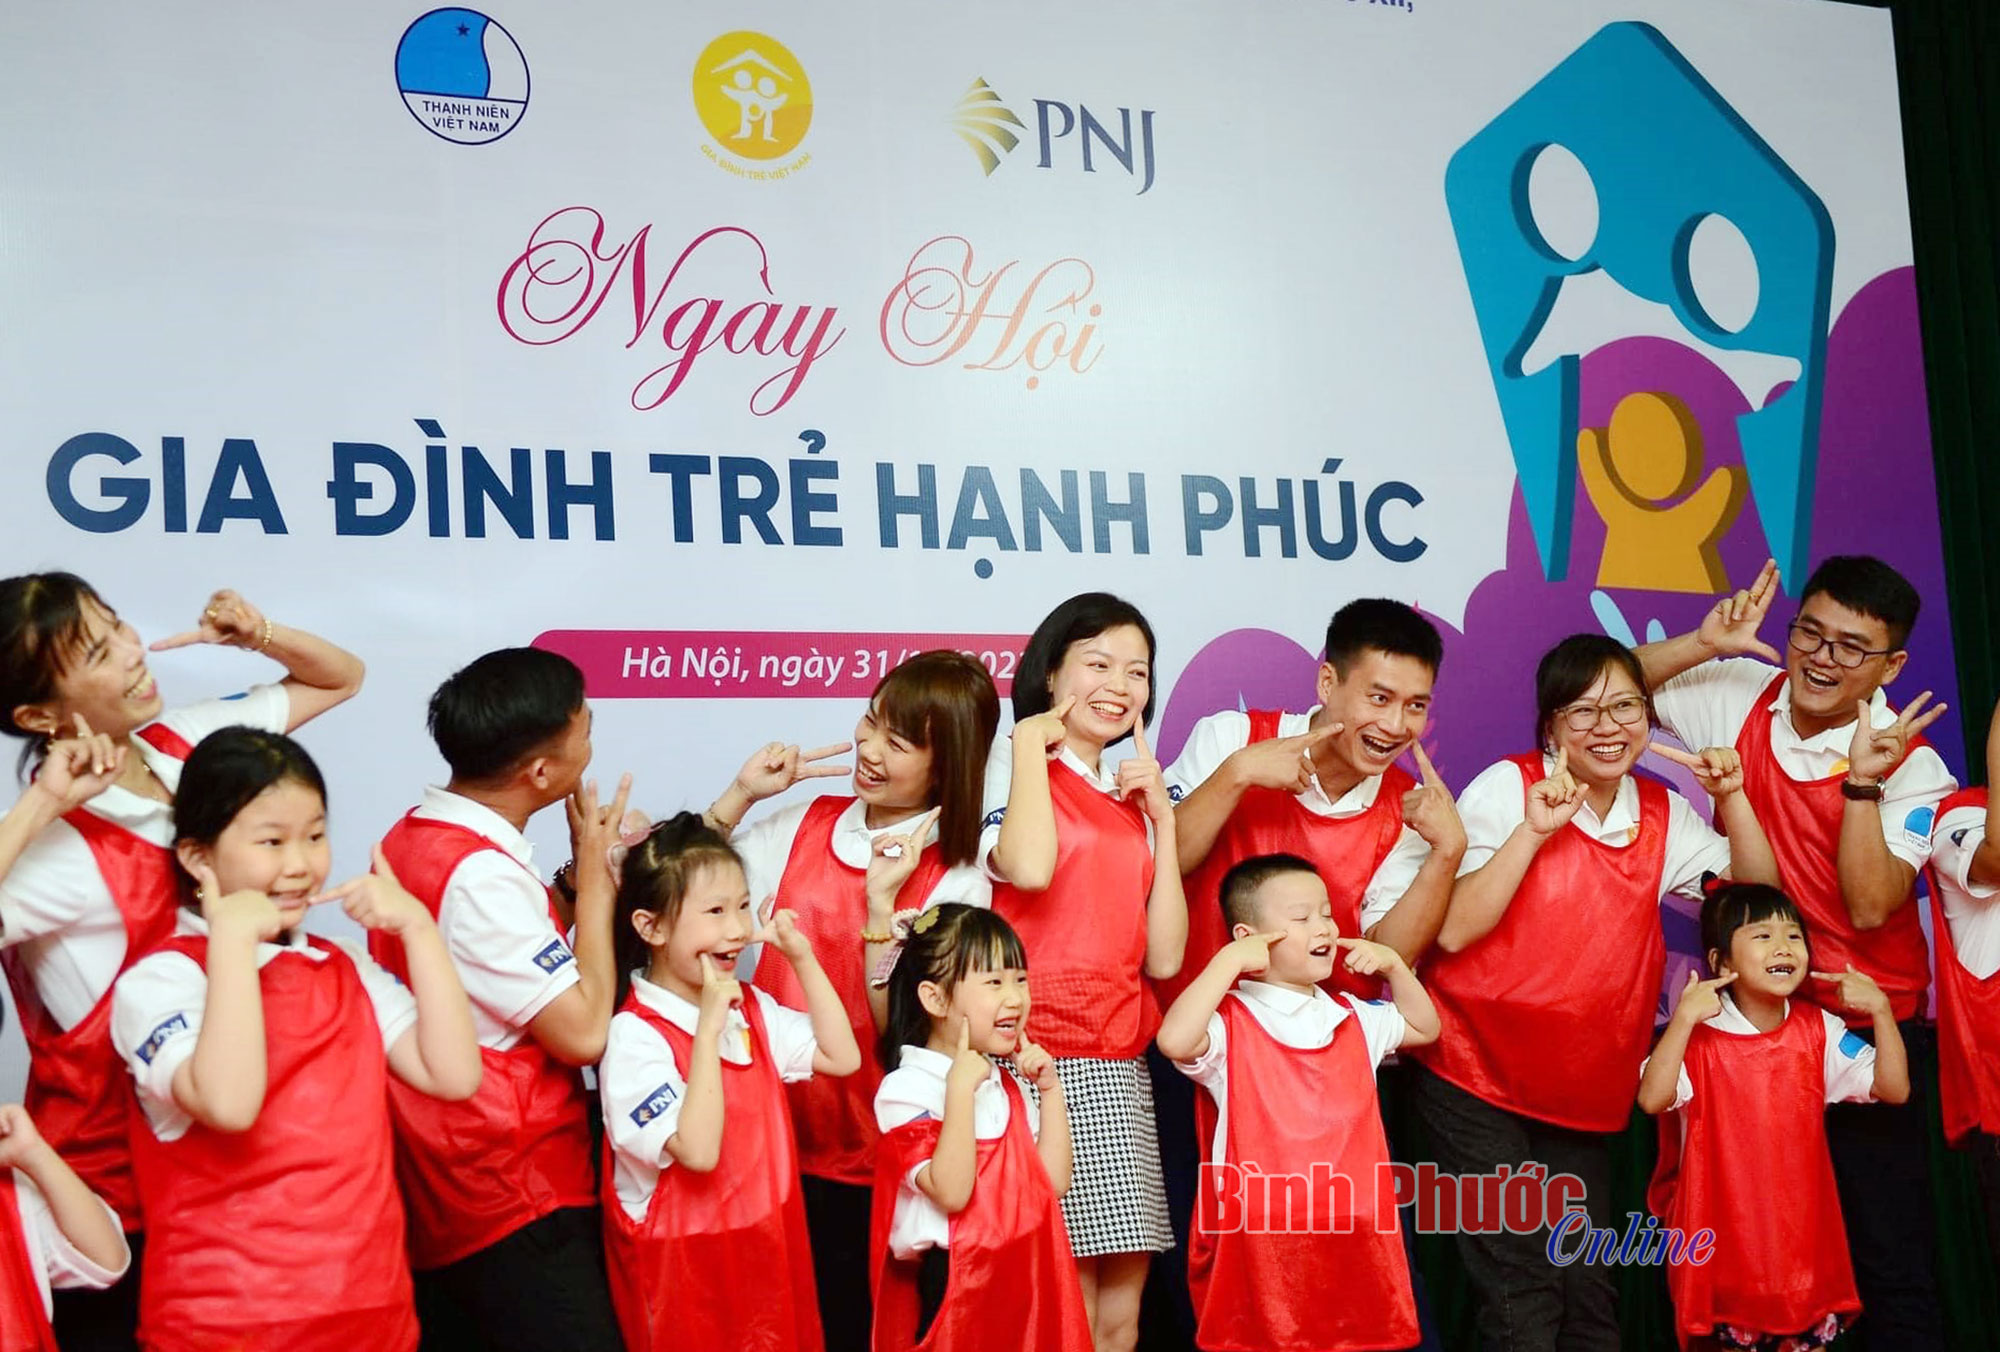 Gia đình trẻ Việt Nam luôn là hình ảnh tươi trẻ và mạnh mẽ. Họ vượt qua những khó khăn để xây dựng một gia đình hạnh phúc và ấm cúng. Hãy dành thời gian để chiêm ngưỡng những khoảnh khắc đẹp của gia đình trẻ Việt Nam.